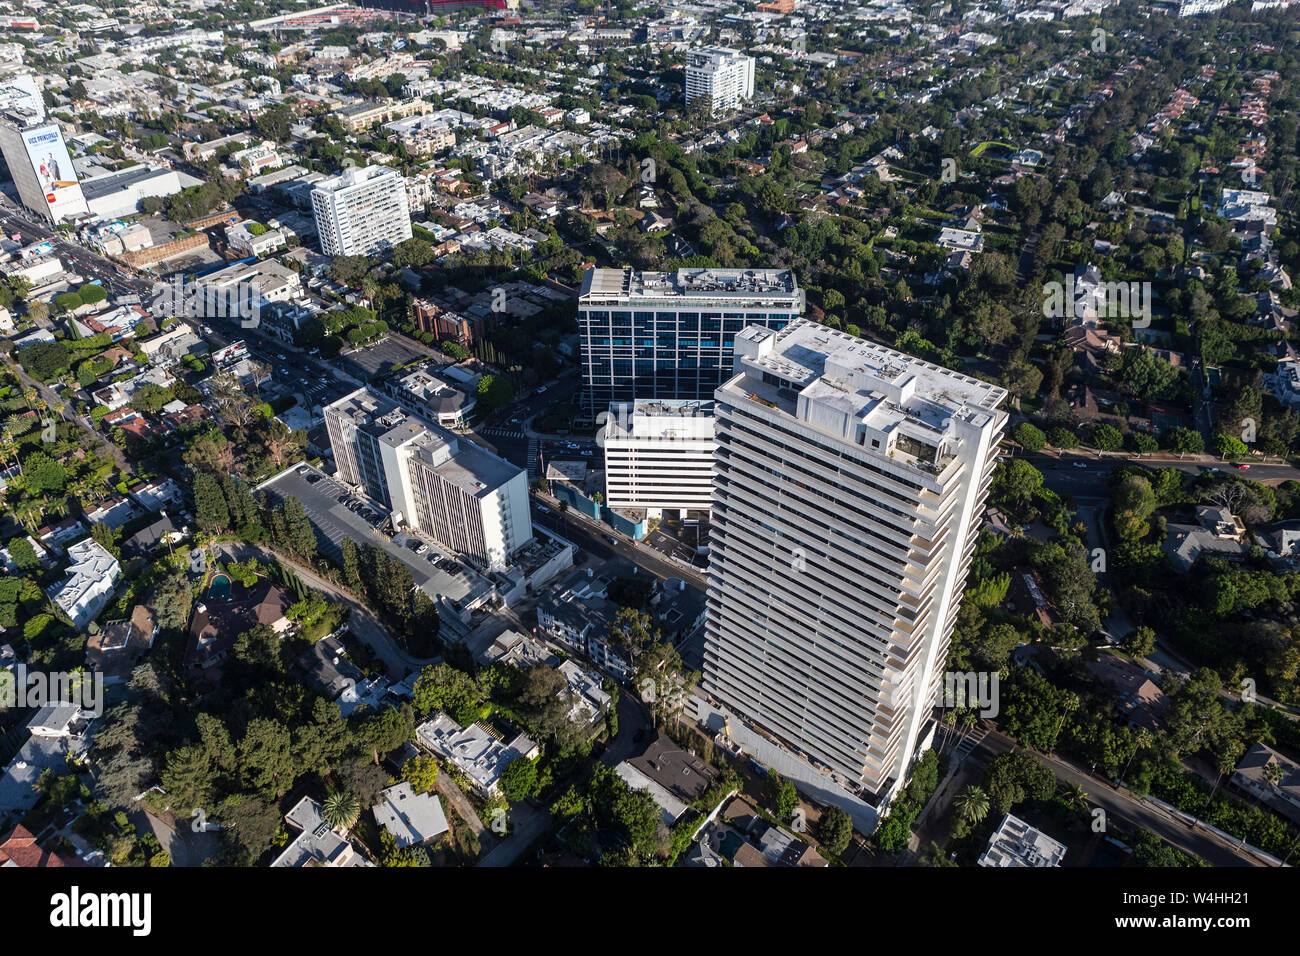 Contea di Los Angeles, California, Stati Uniti d'America - 6 Agosto 2016: Pomeriggio Vista aerea del Sunset Blvd a Doheny Road in West Hollywood. Foto Stock